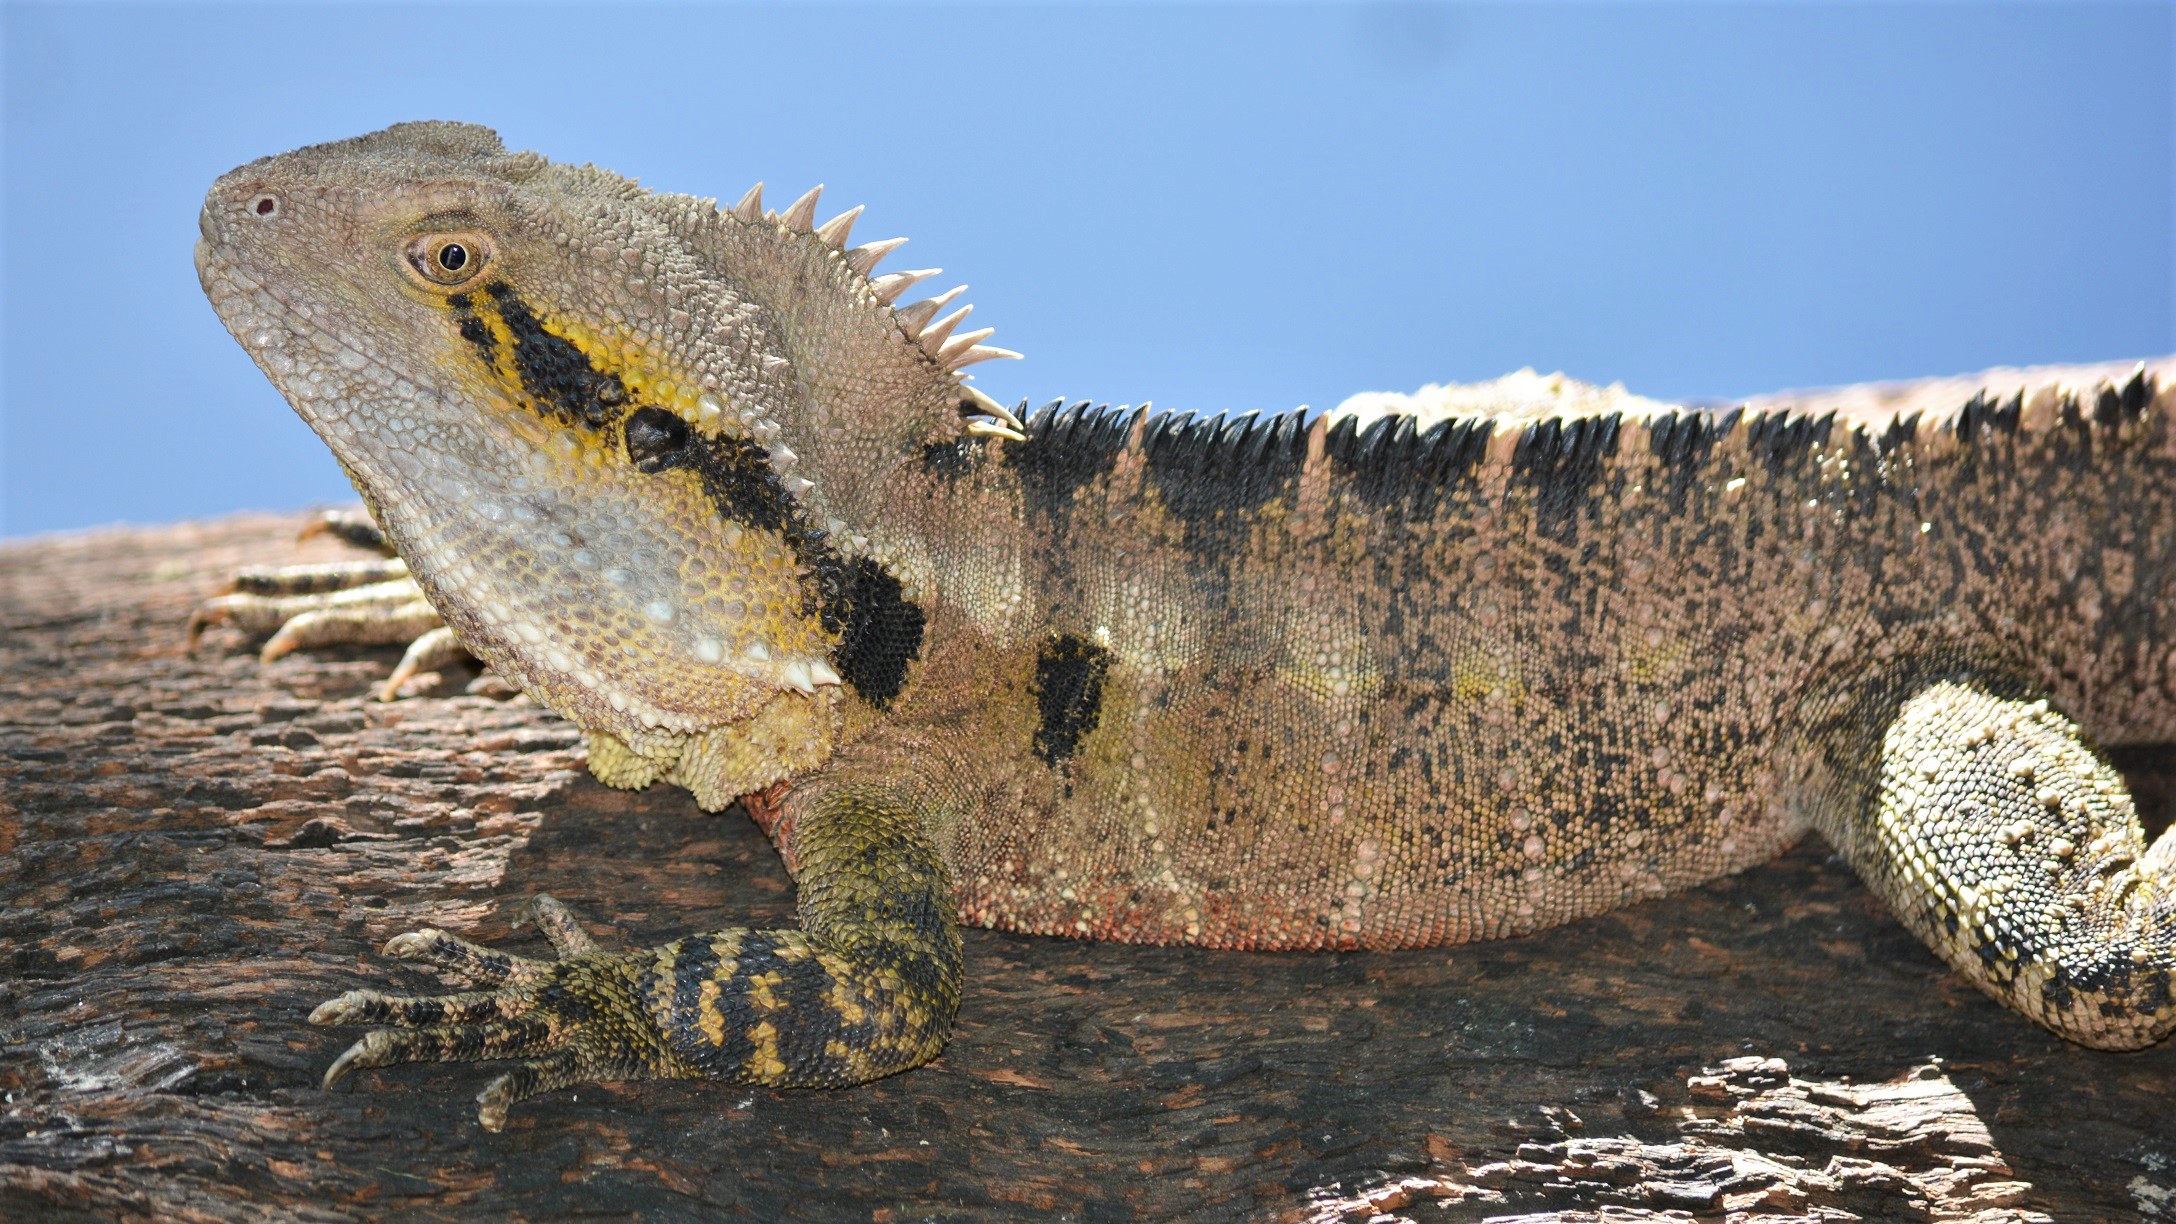 Close Up Eastern Water Dragon Lizard Reptile Water Dragon 2176x1224